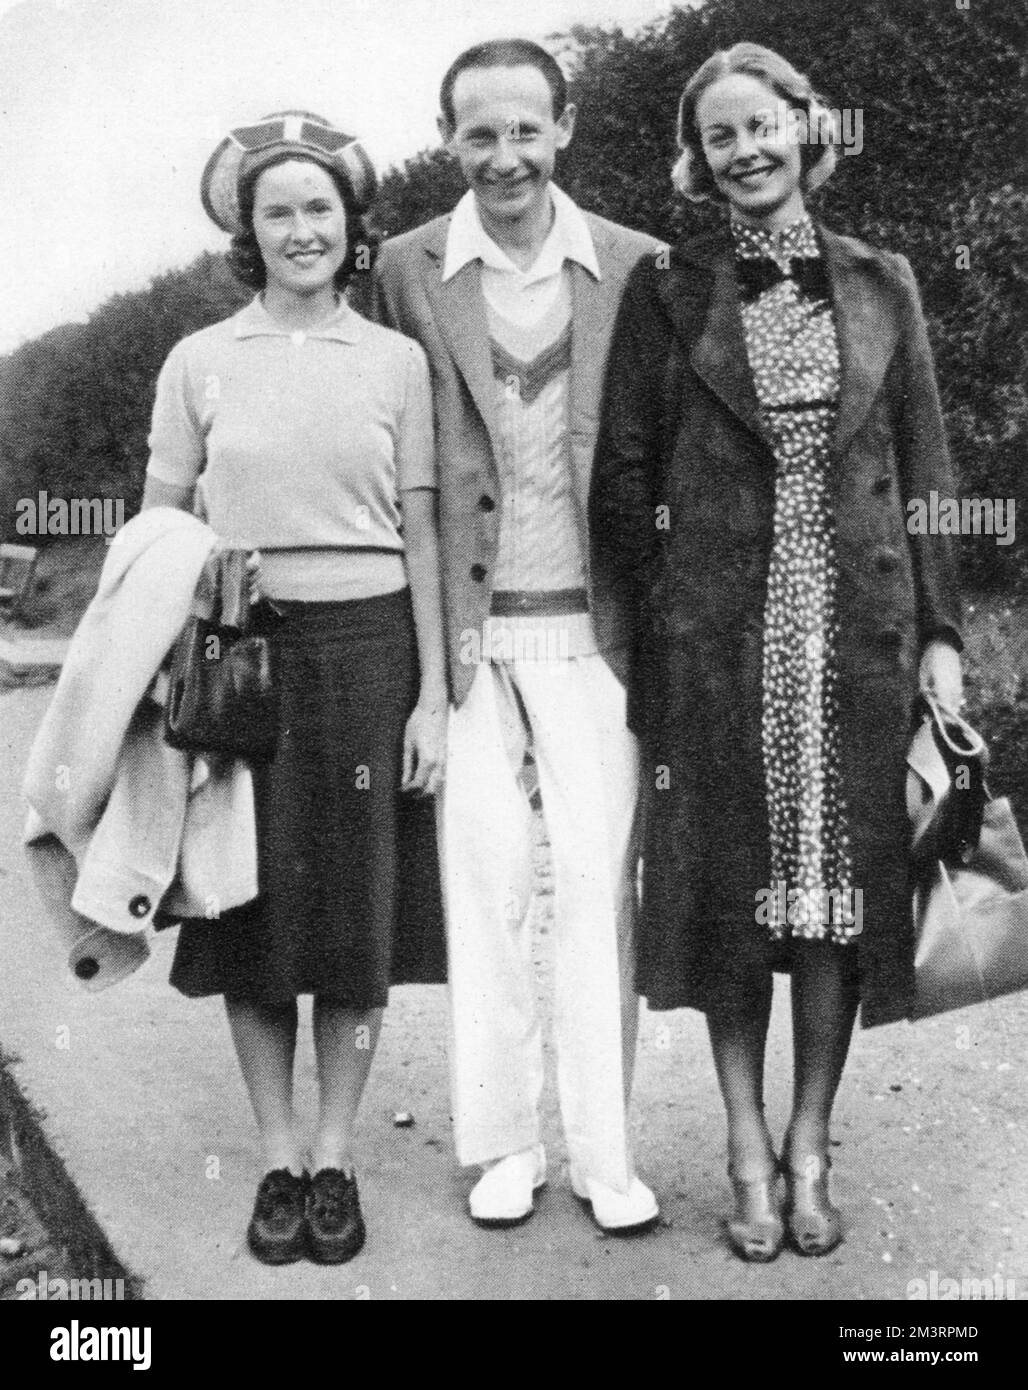 Frau Sarah Palfrey Fabyan, Jean Borotra und Alice Marble wurden 1938 im Roehampton Club fotografiert. Alice Marble (1913 - 1990), amerikanische Tennisspielerin, war die erste Frau, die im selben Jahr sowohl die US Open- als auch die Wimbledon-Singles-Titel sowie die Doppel- und gemischten Doppel-Titel gewann. Außerdem war sie Pionierin beim Tragen von Shorts für Tennis, erstmals 1932 und 1950, unterstützte die schwarze Tennisspielerin Althea Gibson und ermutigte die Öffentlichkeit, schwarze und homosexuelle Tennisspieler in das Spiel aufzunehmen. Jean Borotra (1898-1994) war ein französischer Tennisspieler, bekannt als „Bounding Basque“ Stockfoto